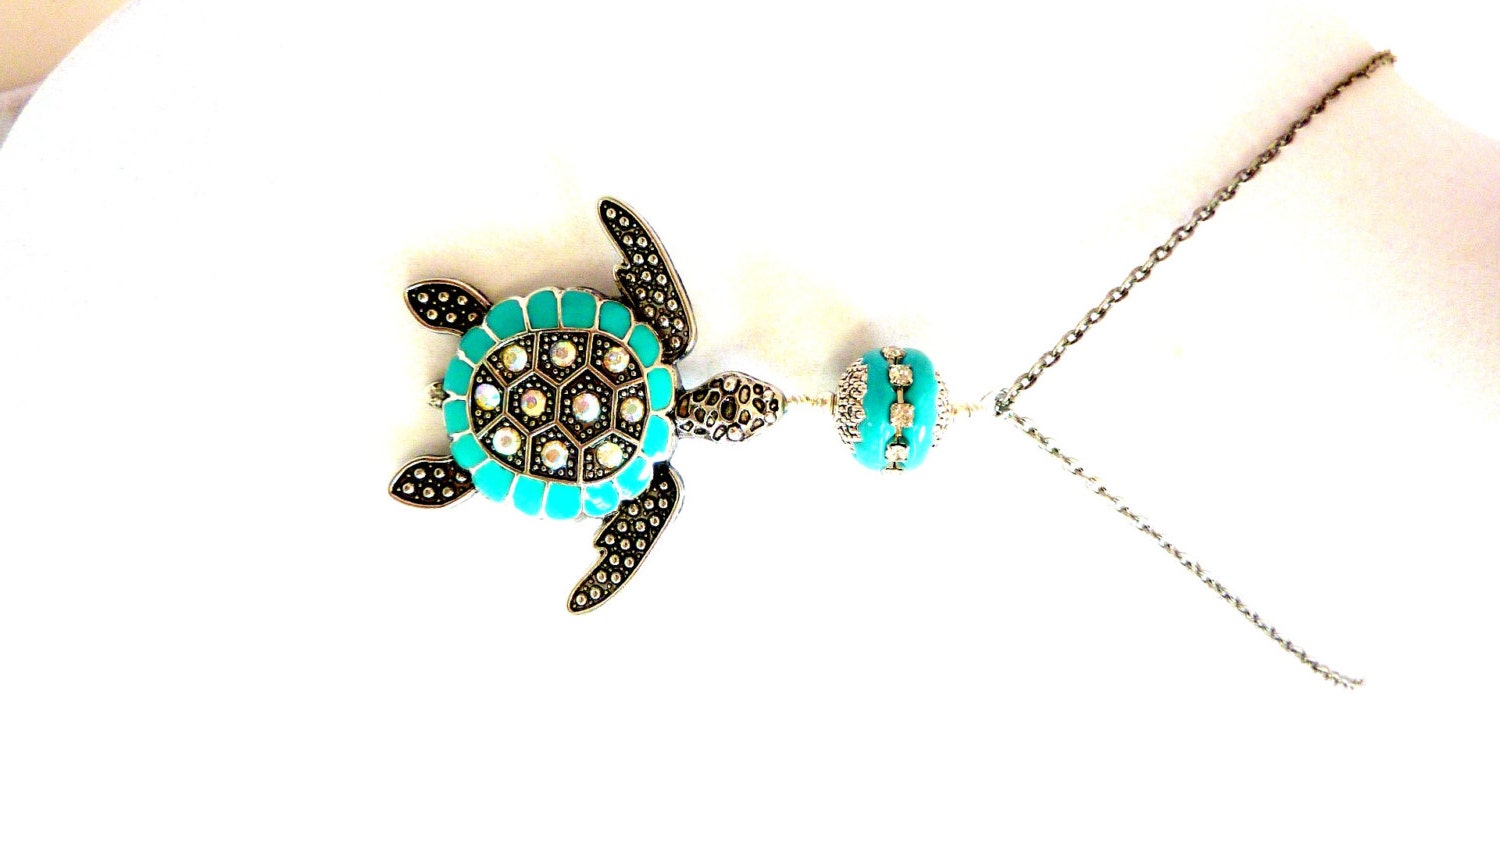 Aqua Turtle Pendant, Turquoise Rhinestone Sea Turtle Necklace, Sea Life, Tortoise Necklace, Nature, Gift for Her - Elegencebyelaine